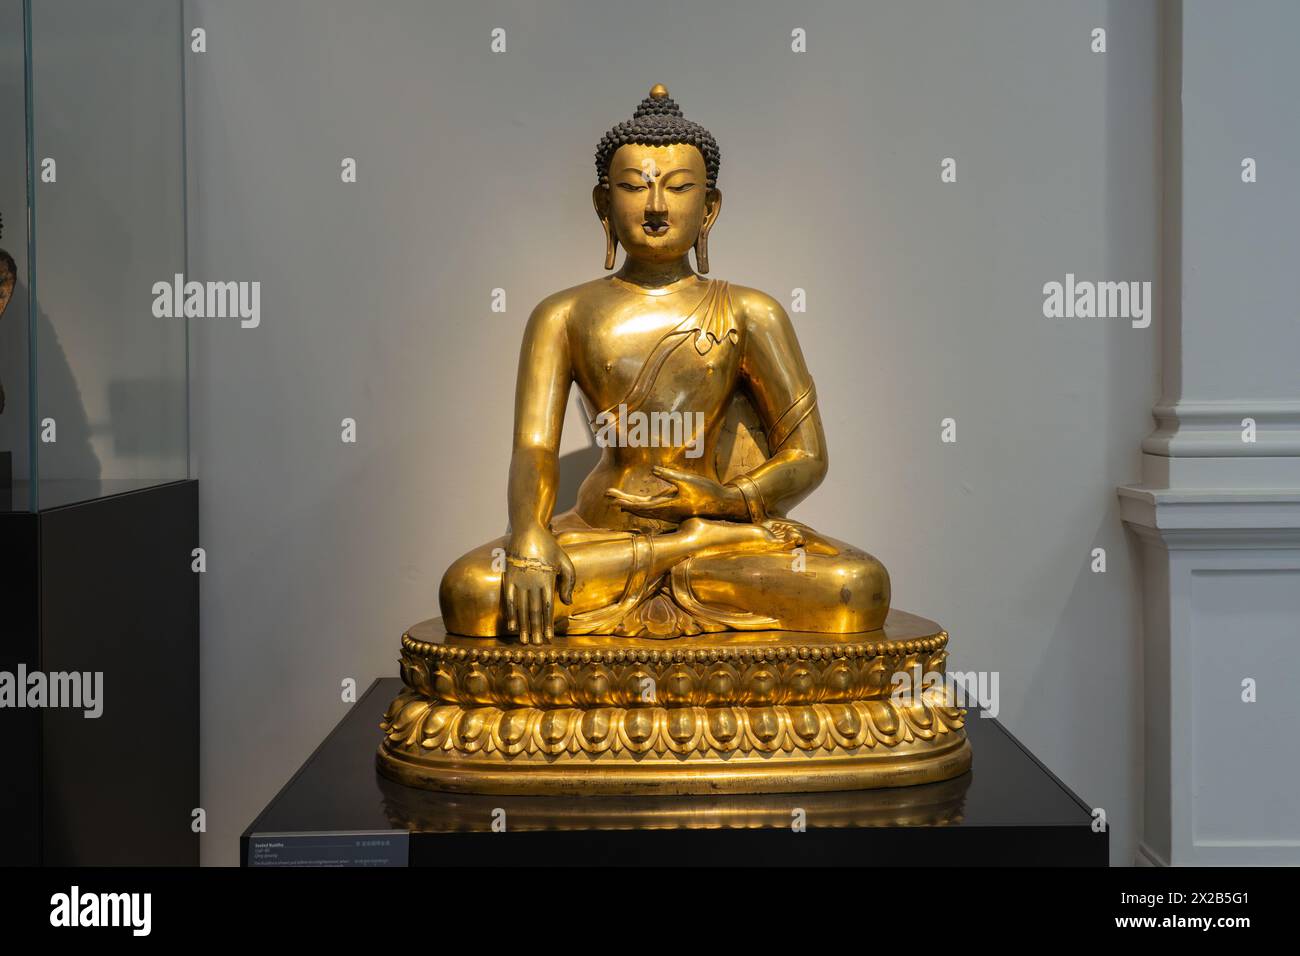 Bouddha assis 1736-86 dynastie Qing en cuivre doré, de Chine ou du Tibet, au V&A Museum, Londres. Le Bouddha est montré juste avant l'illumination Banque D'Images